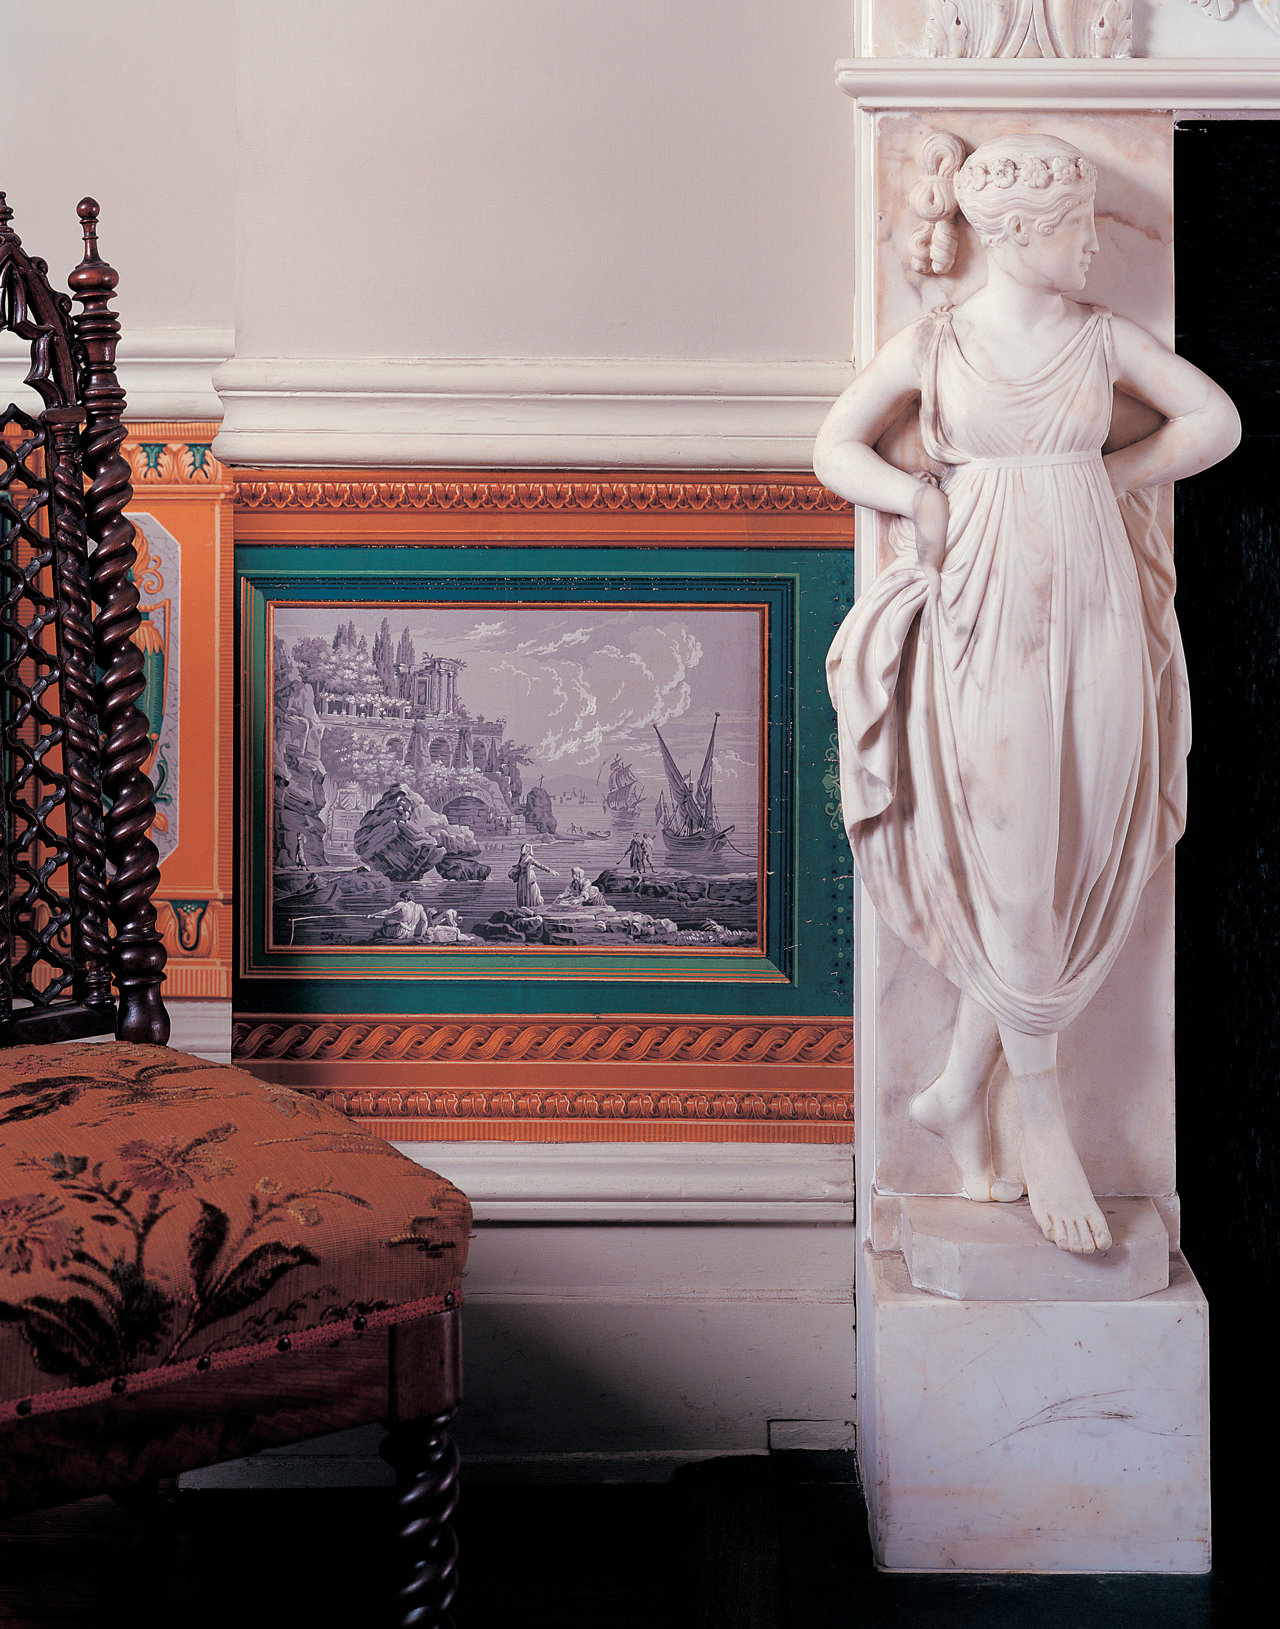 Johnson utilizó paneles de papel pintado francés de principios del siglo XIX (probablemente de Zuber) en el dormitorio de Warhol. Una figura de mármol blanco de estilo griego adorna la chimenea.